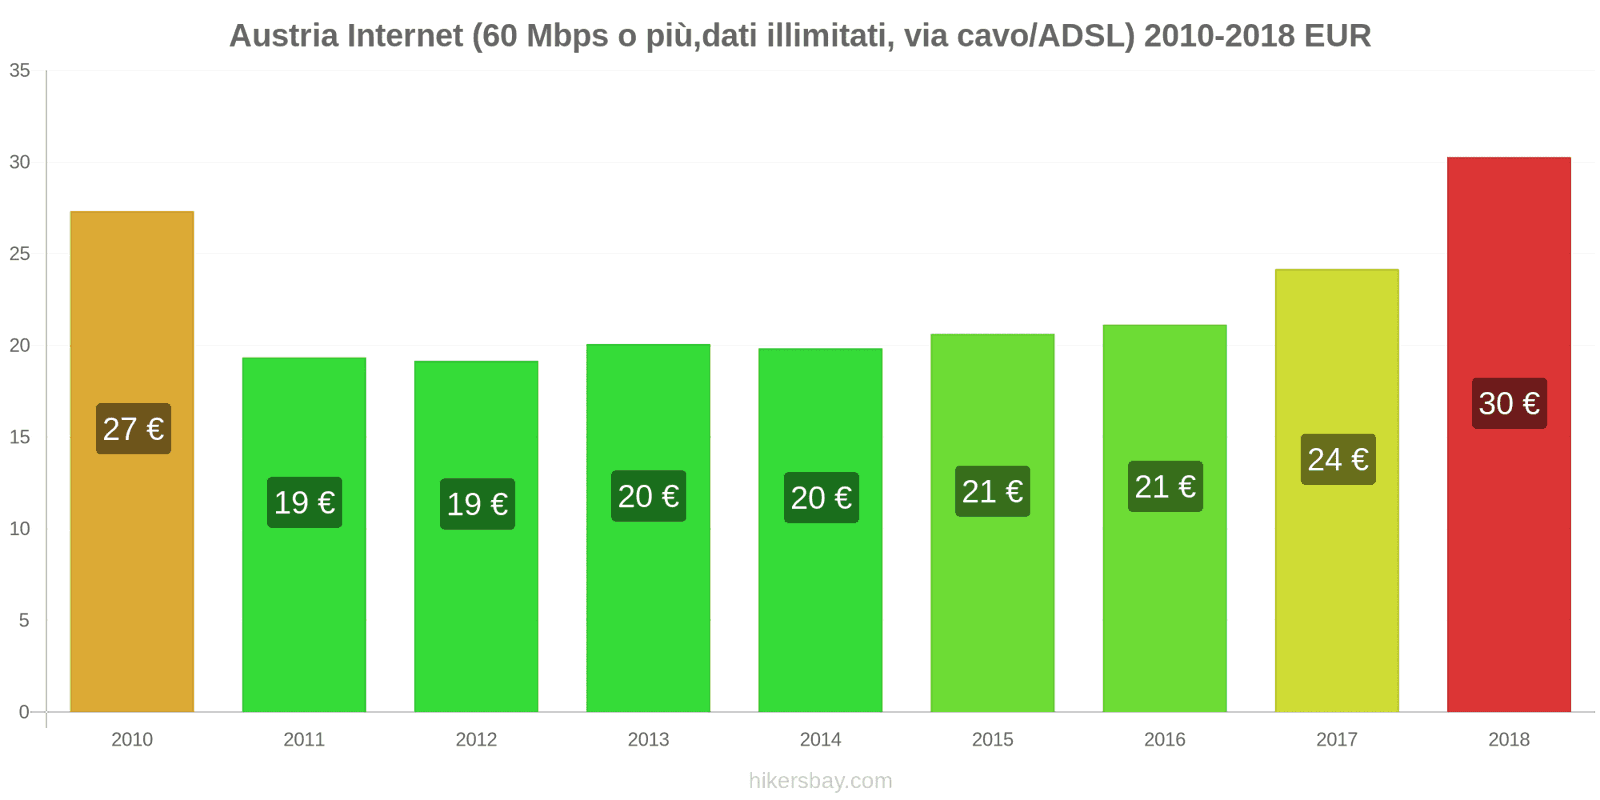 Austria cambi di prezzo Internet (60 Mbps o più, dati illimitati, cavo/ADSL) hikersbay.com